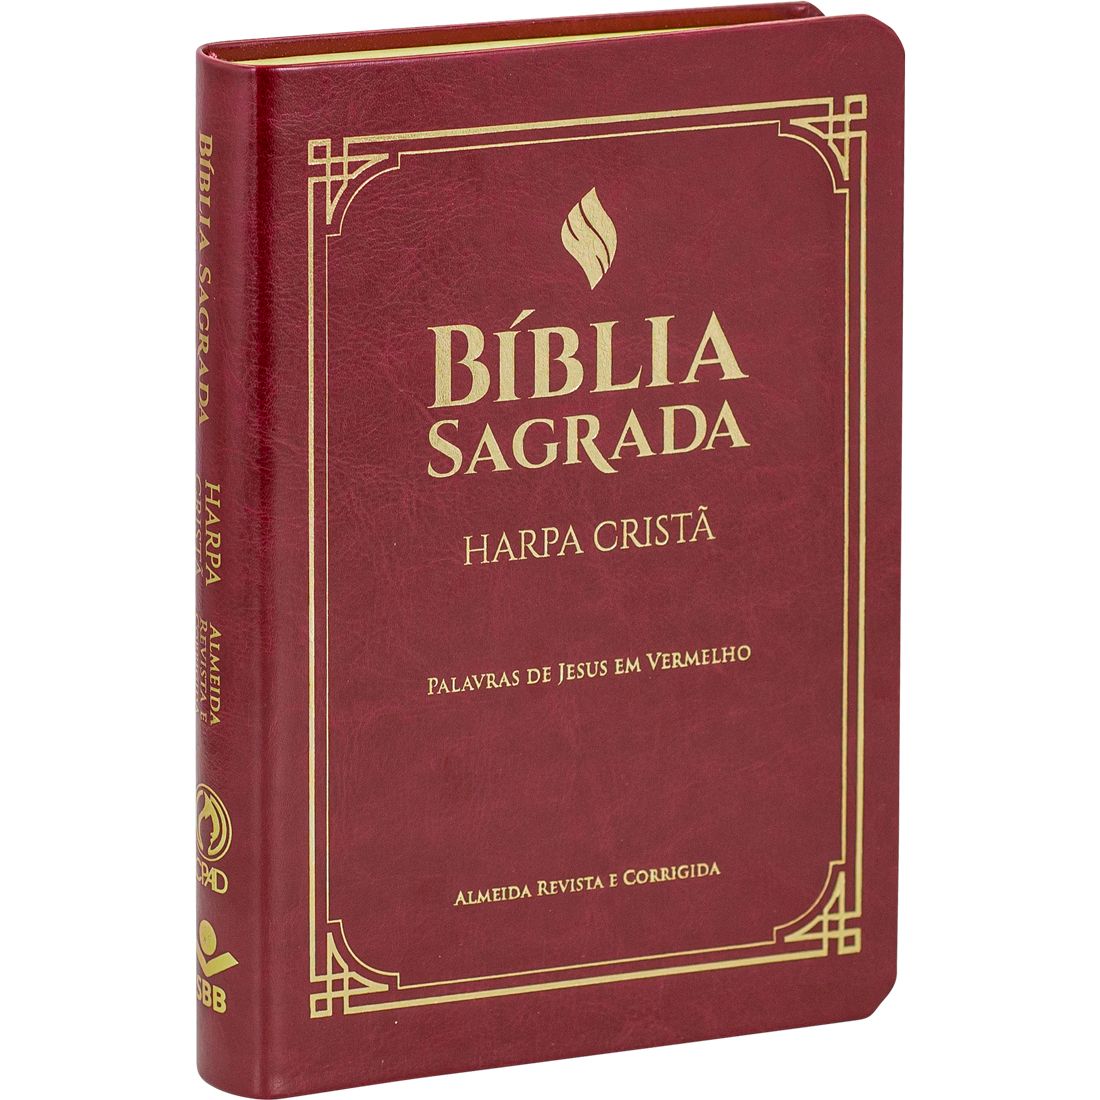 Bíblia Sagrada com letra grande, harpa cristã e palavras de Jesus impressas em vermelho.